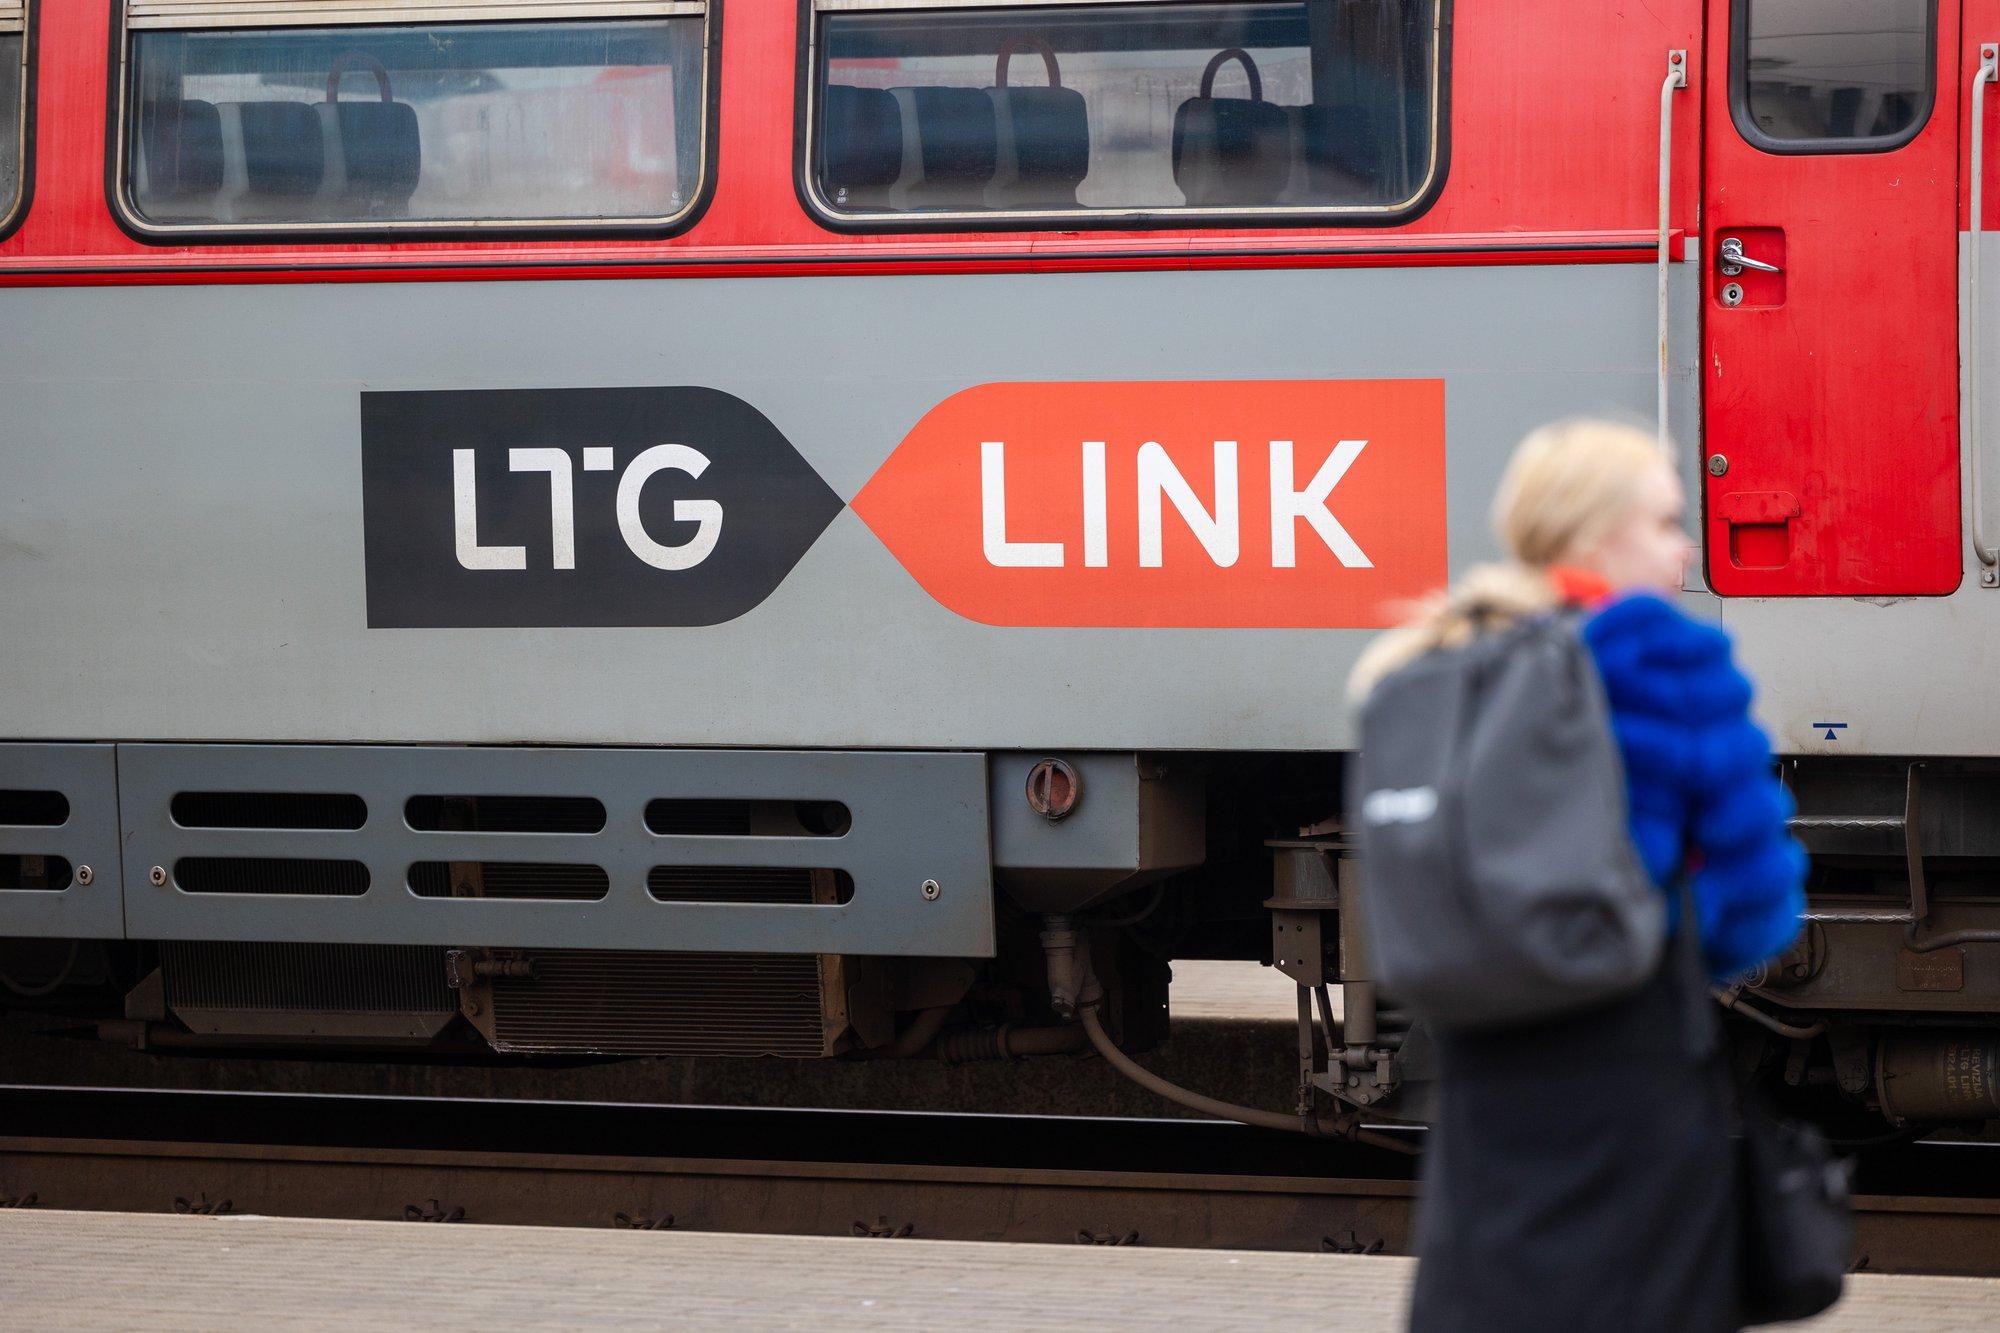 Vilniuje planuojama pirmoji geležinkelio linija po žeme? Aišku, kurias vietas sujungtų